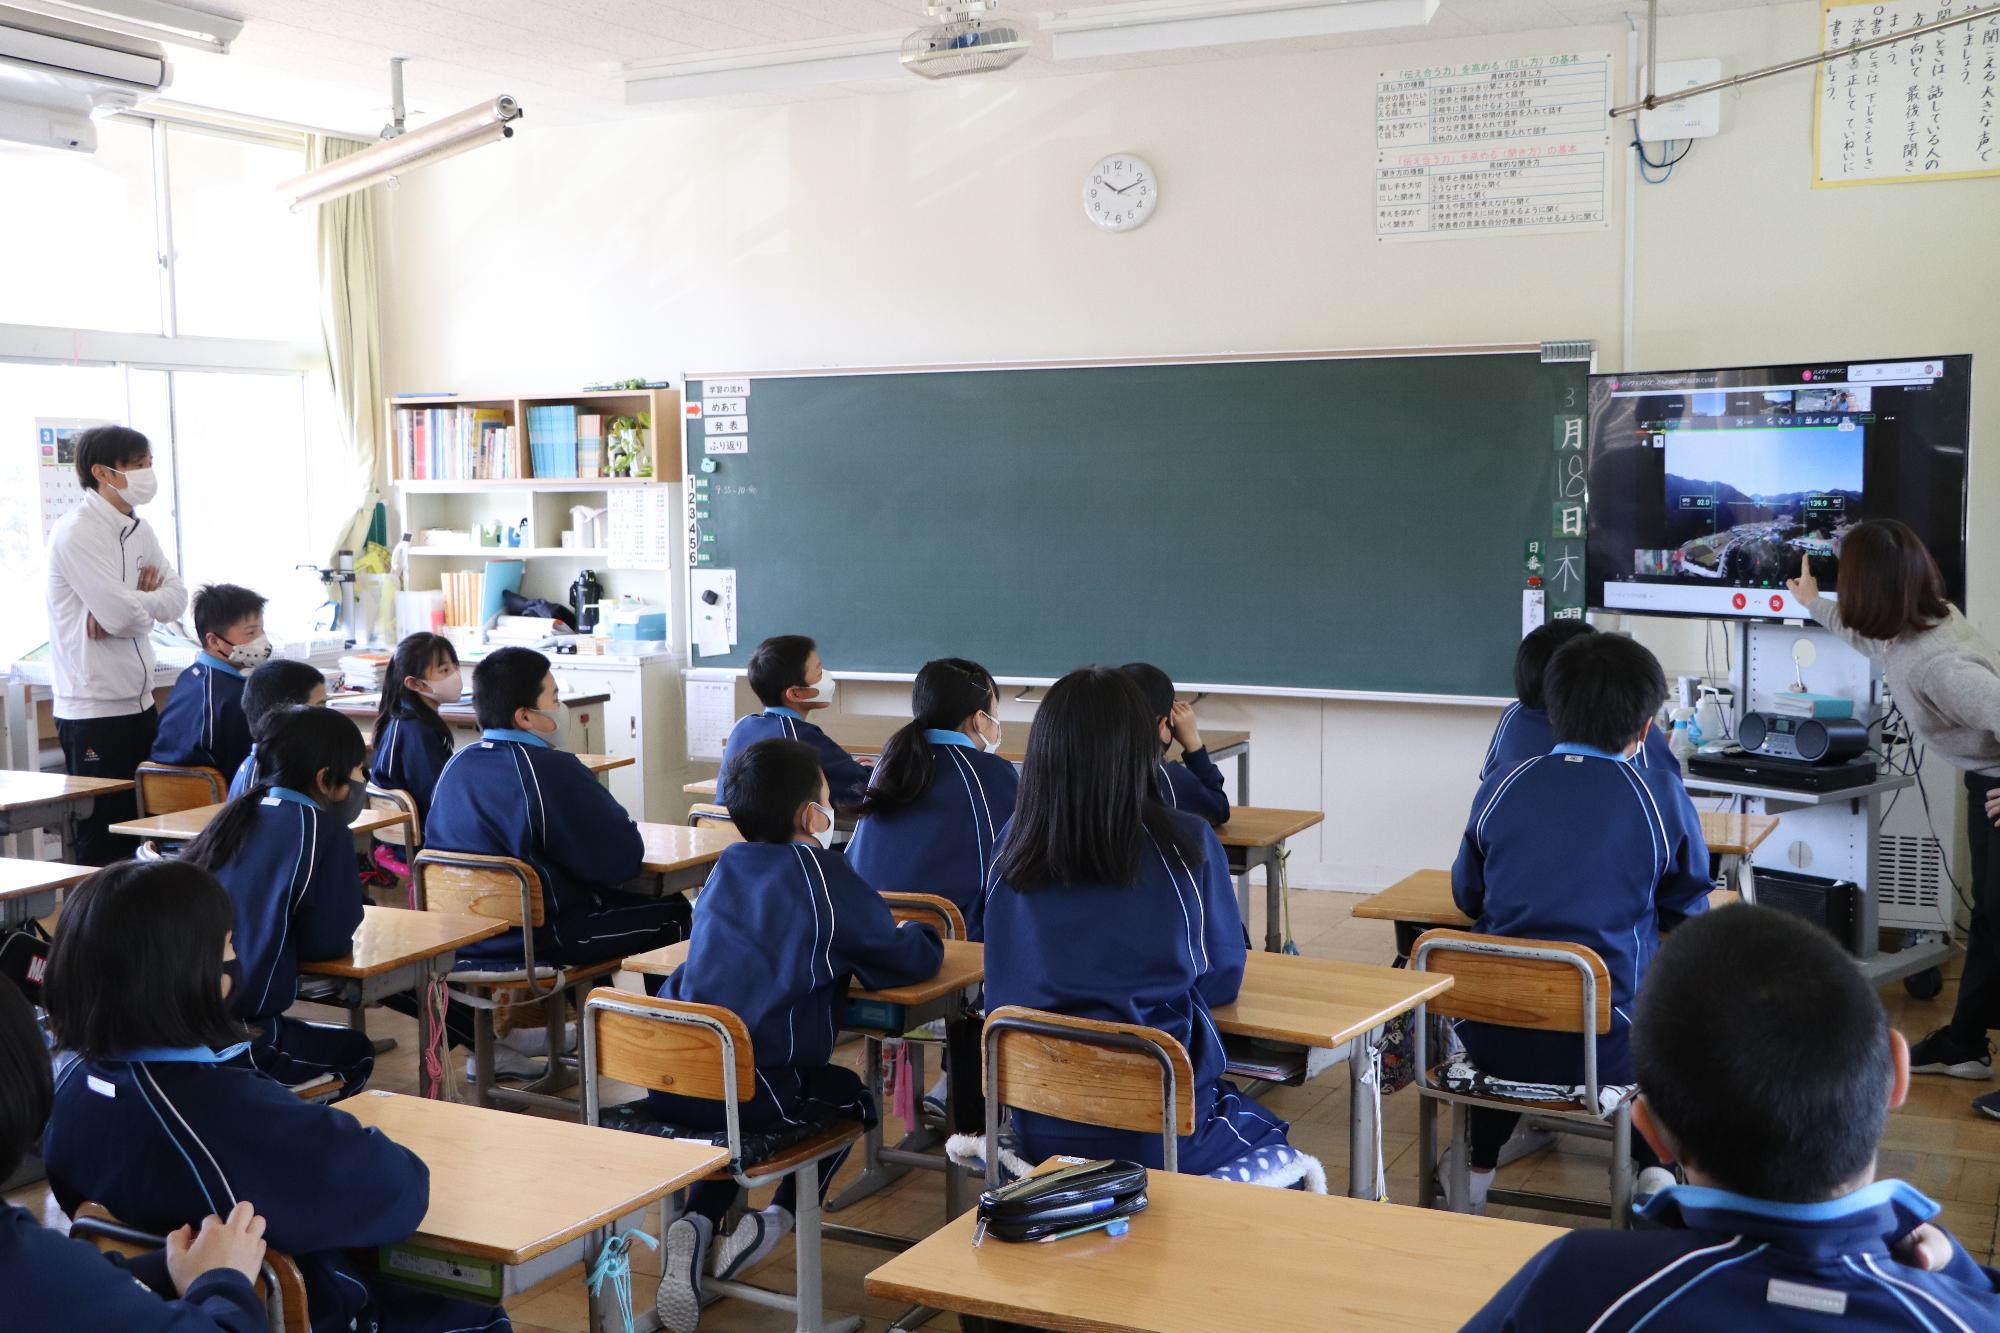 ドローンからの映像が配信されている波賀小学校の教室の様子